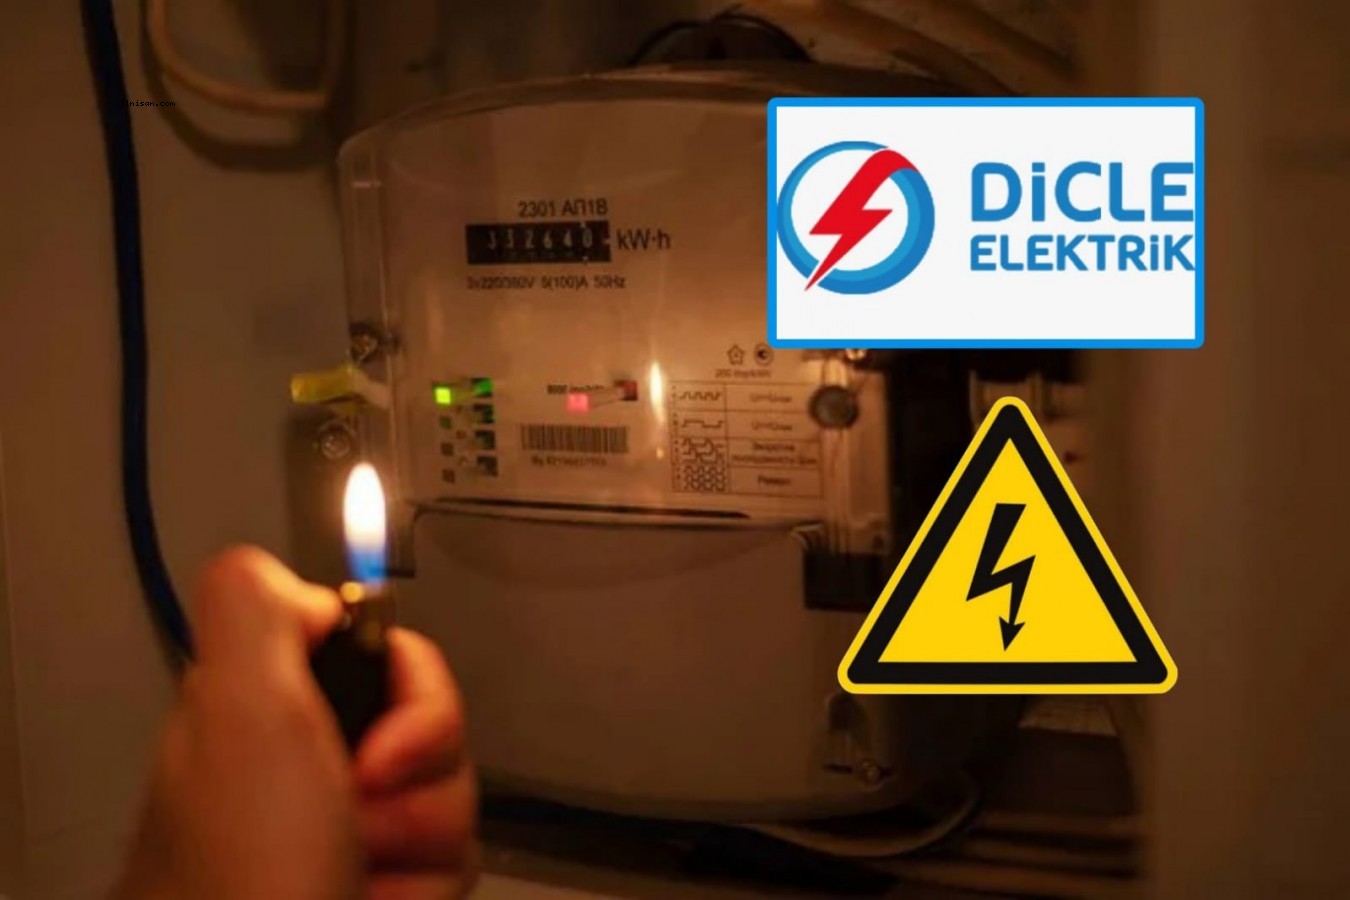 DEDAŞ'ın bildirimsiz 2,5 saat elektrik kesintisi vatandaşı mağdur etti;